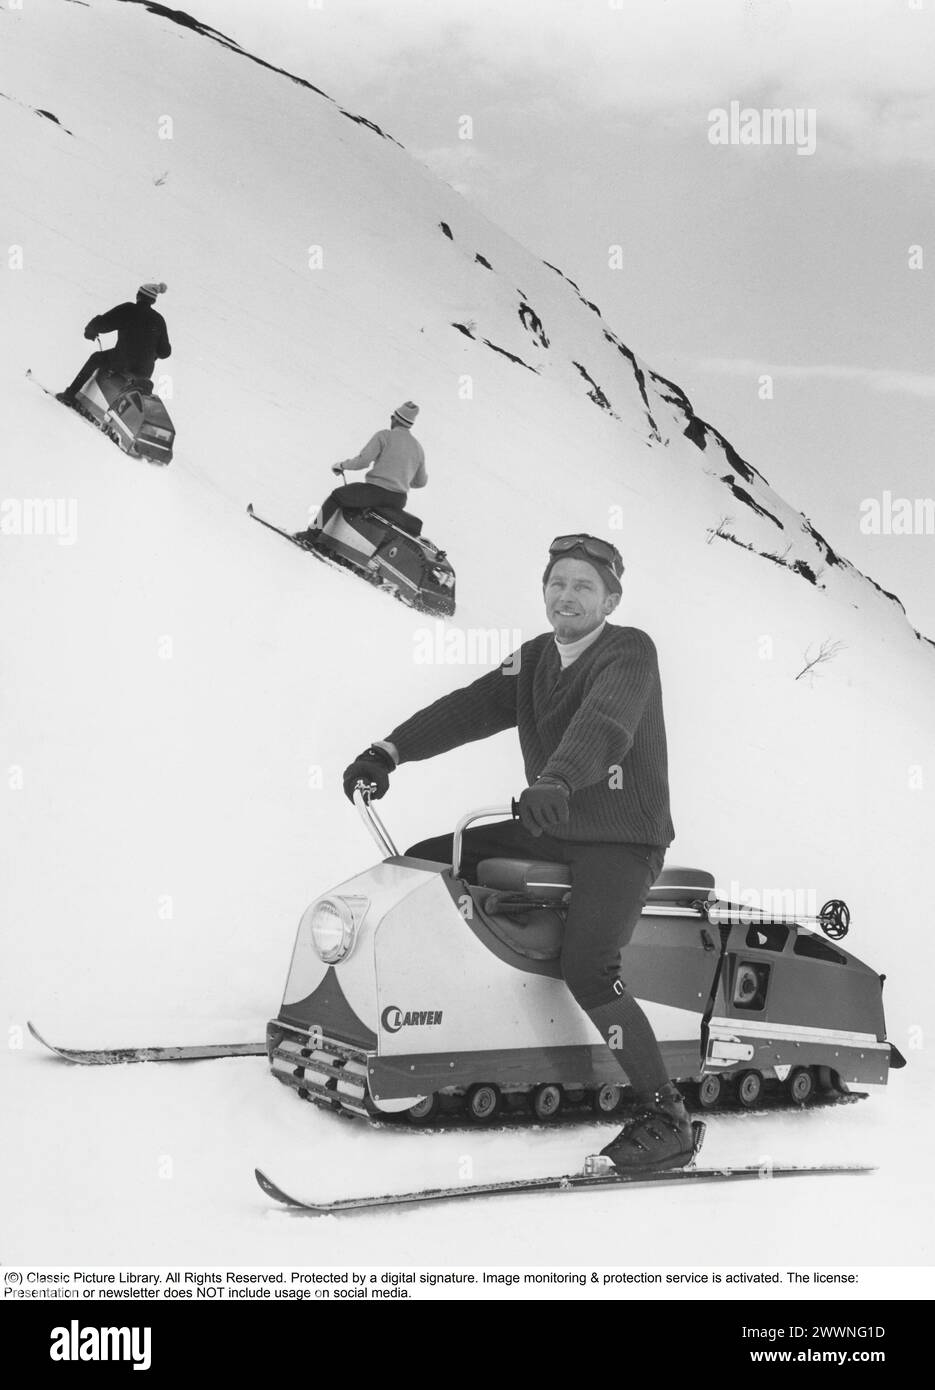 "Larven" (caterpillar) Una motoslitta svedese non convenzionale che ha raggiunto lo status di culto. Consisteva in una lunga pista caterpillar con un sedile in cui il conducente sedeva e guidava con l'aiuto del suo peso e con gli sci. È stato lanciato nel 1965 e prodotto dalla società Lenko a Östersund, fondata da Lennart Nilsson. Quando è stato lanciato, è costato 3.000 SEK. Sono stati costruiti circa 4.500 esemplari in totale. La velocità massima era di 48 km/h. La caterpillar è stata spinta avanti con fascette in plastica rinforzate con fibra di vetro. Il caterpillar era lungo 178 cm, largo 81 cm, con un peso totale di 76 kg. Alunna Foto Stock